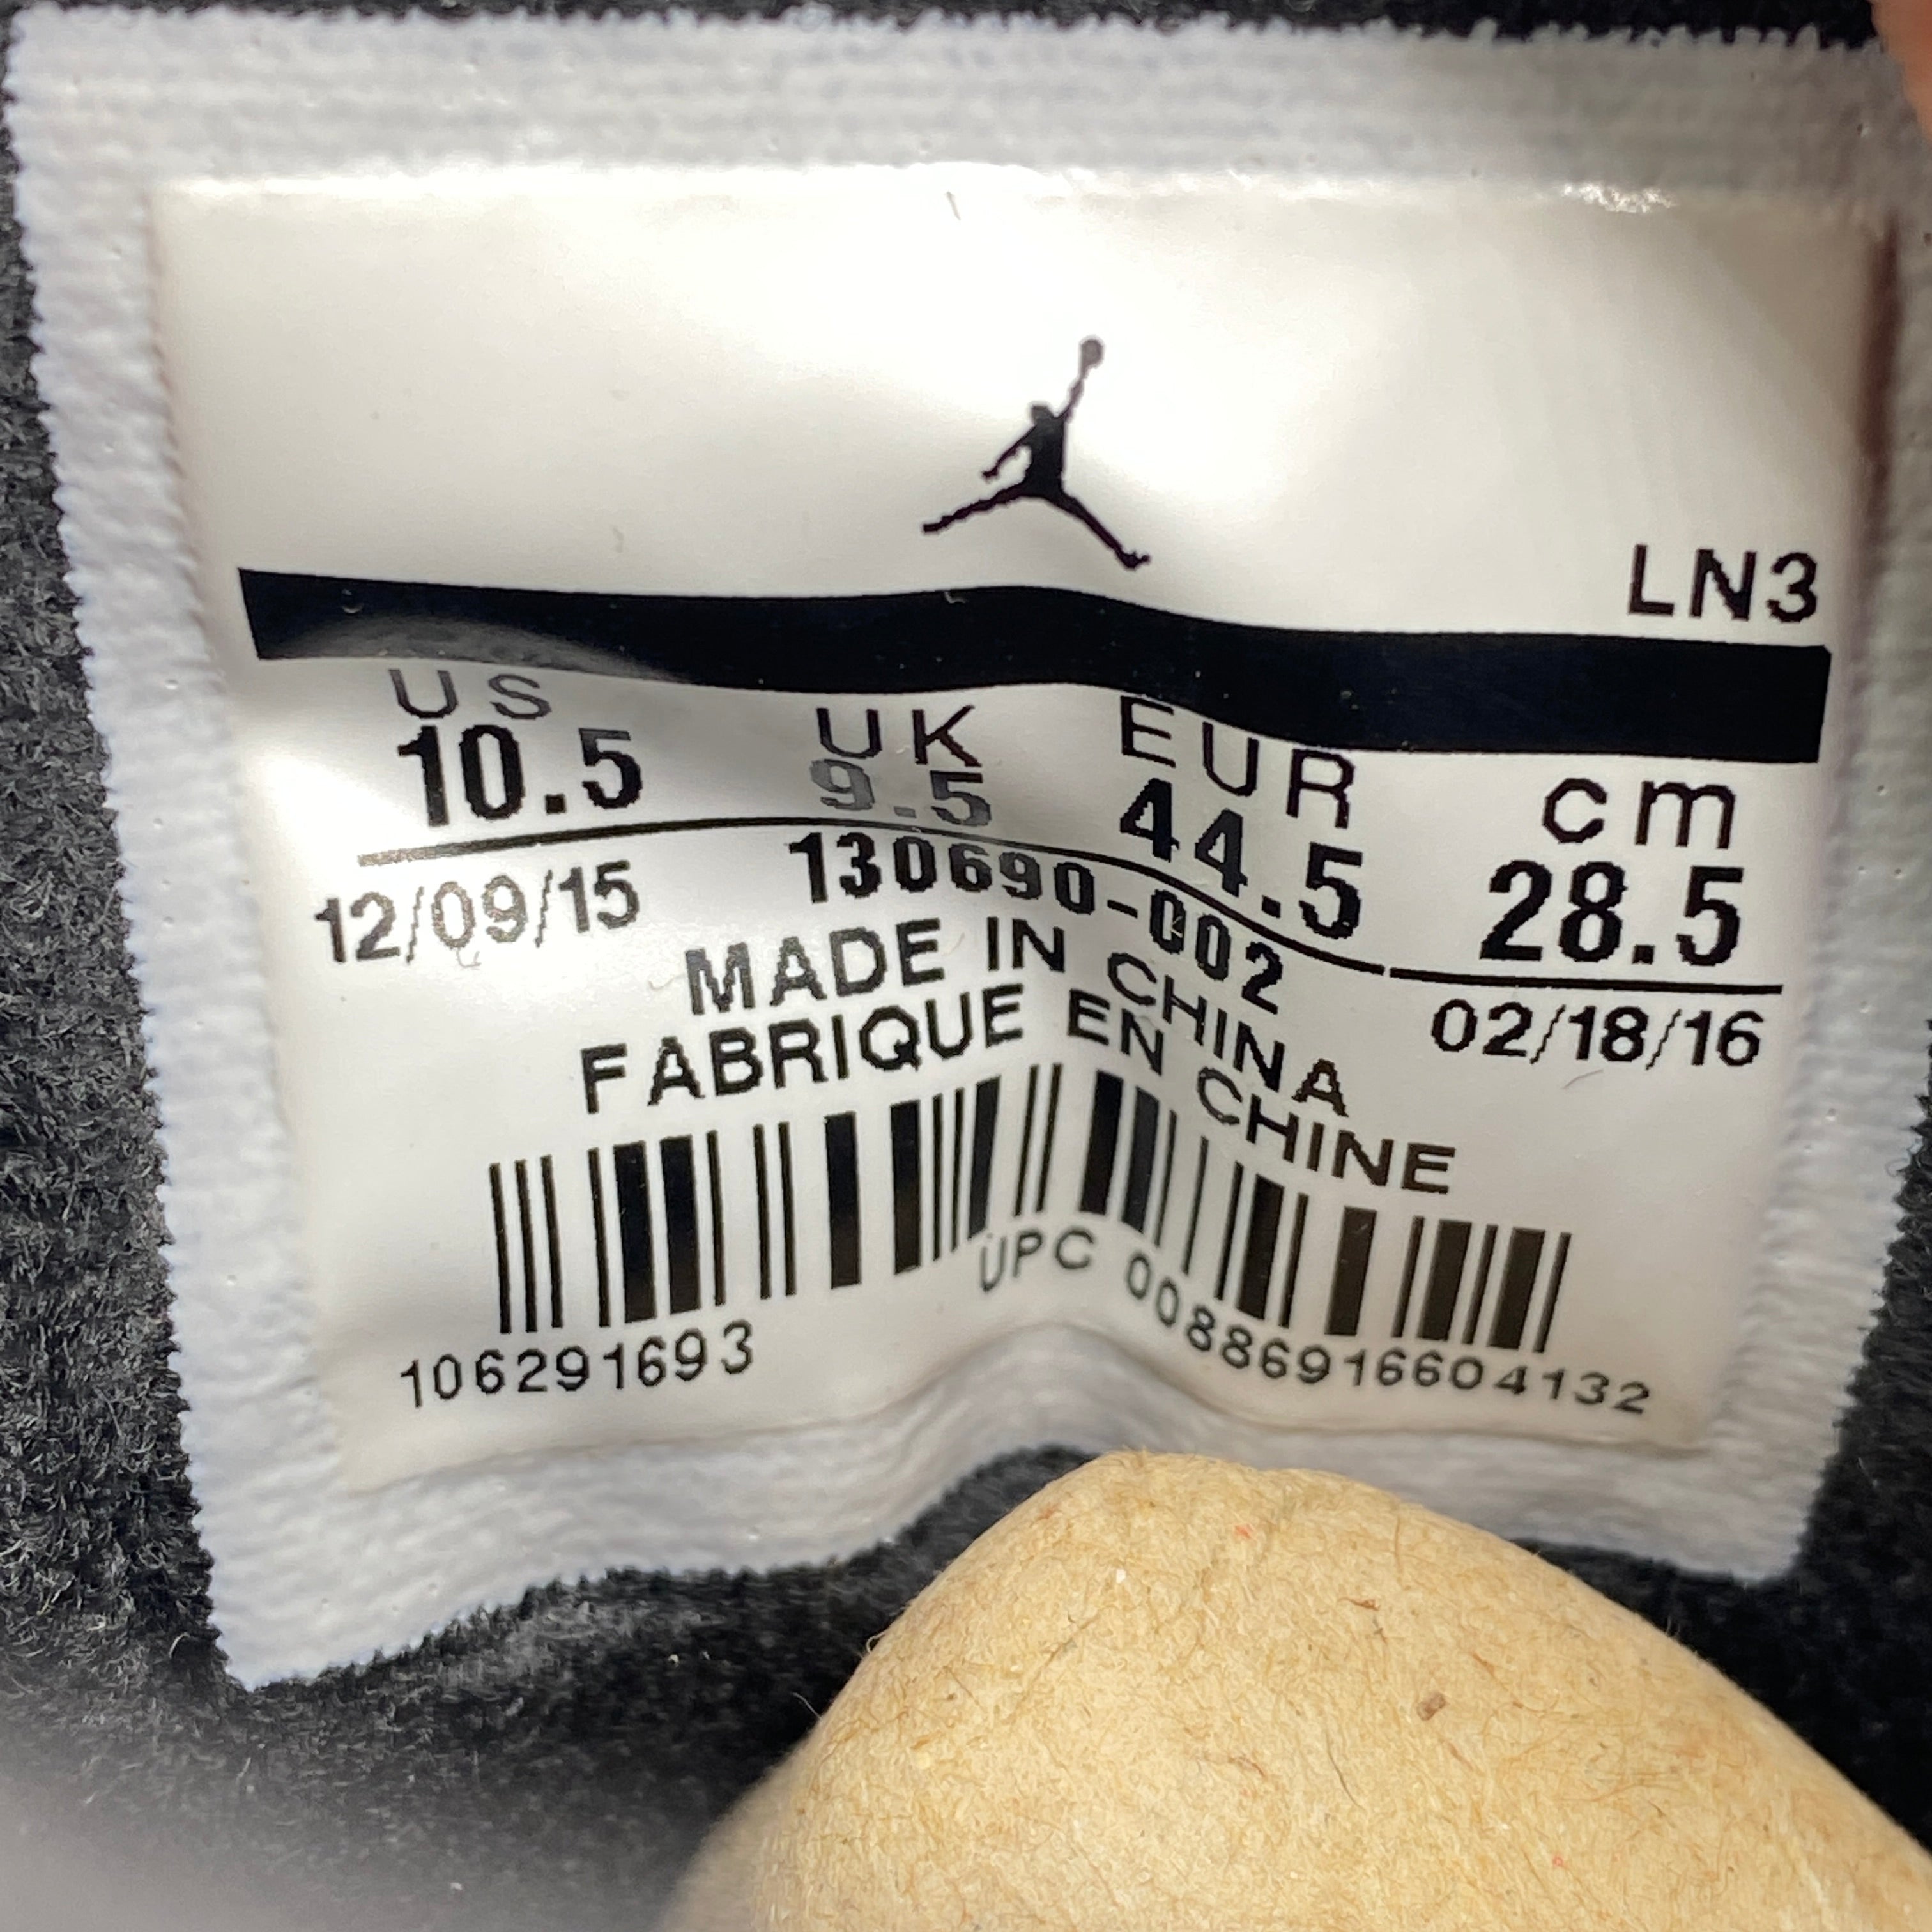 Air Jordan 12 Retro &quot;Flu Game&quot; 2016 New Size 10.5